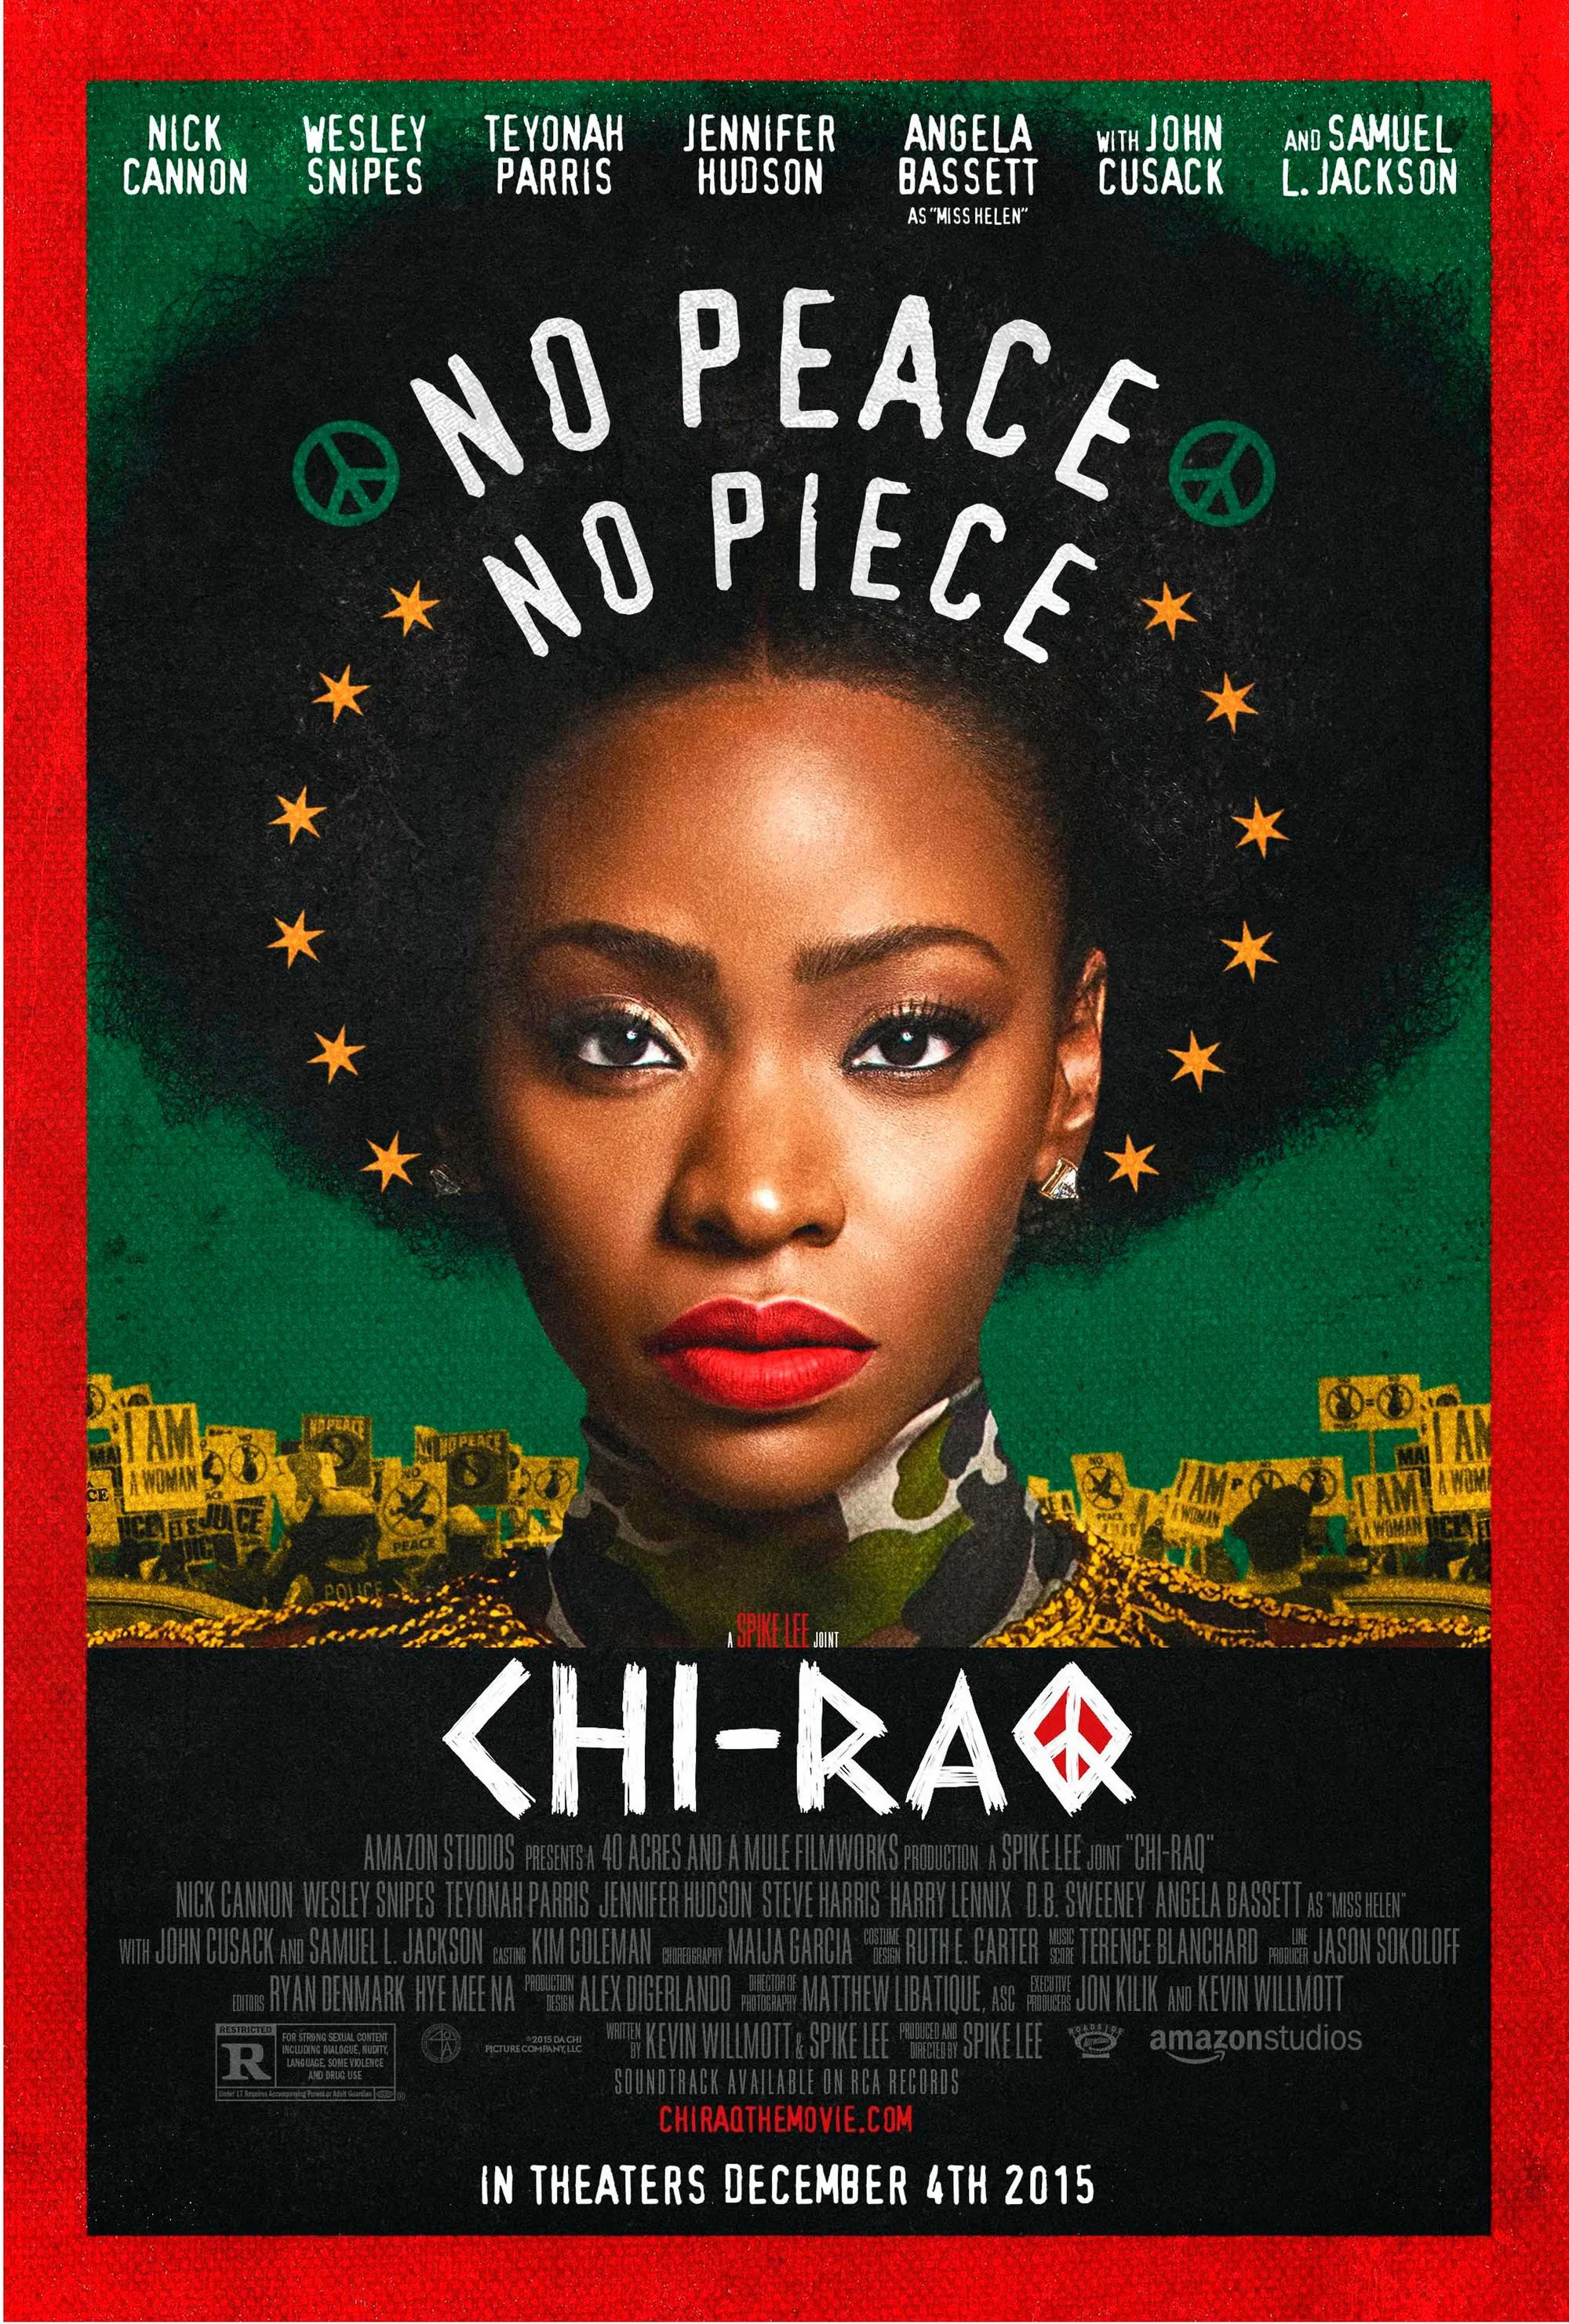 Affiche du film Chi-raq, réalisé par Spike Lee, 2015.